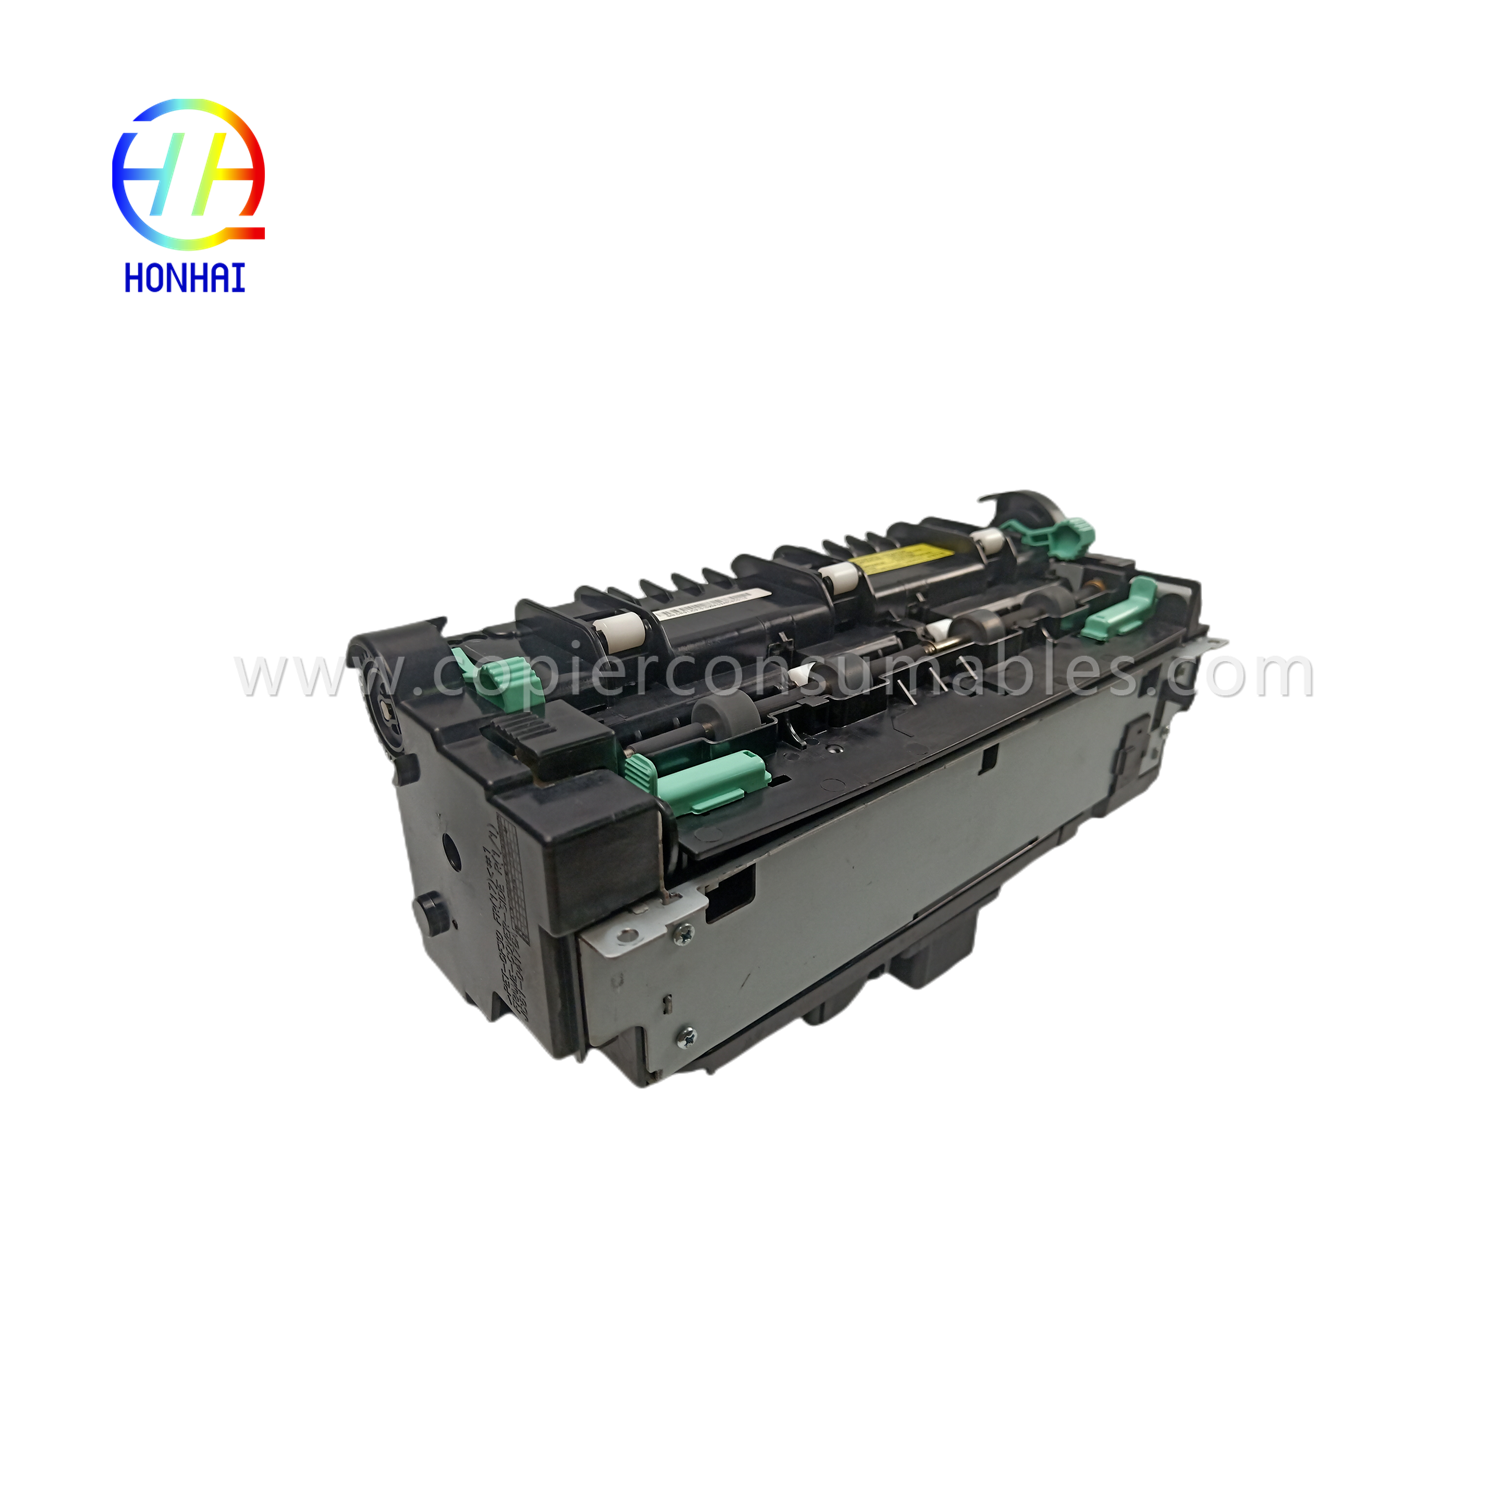 ឯកតា Fuser សម្រាប់ Samsung ML4510 ML4512 ML-4510ND ML-4512ND ML-4510 ML-4512 Fusing Assembly JC91-01028A (1)